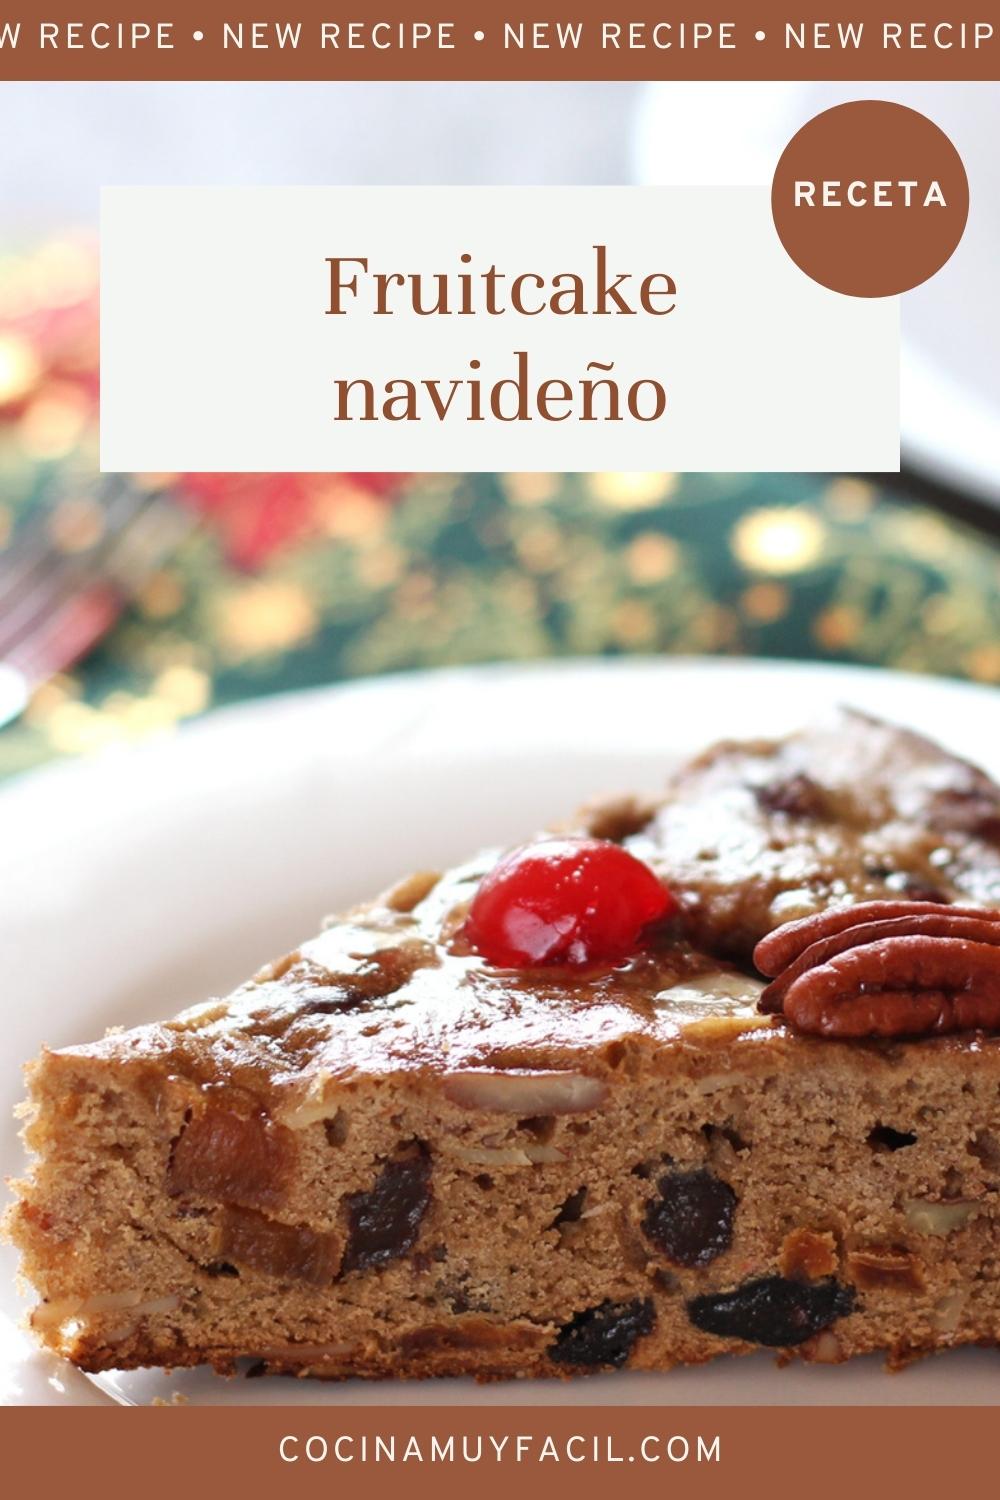 Tarta de frutos secos o fruitcake navideño. Receta | cocinamuyfacil.com